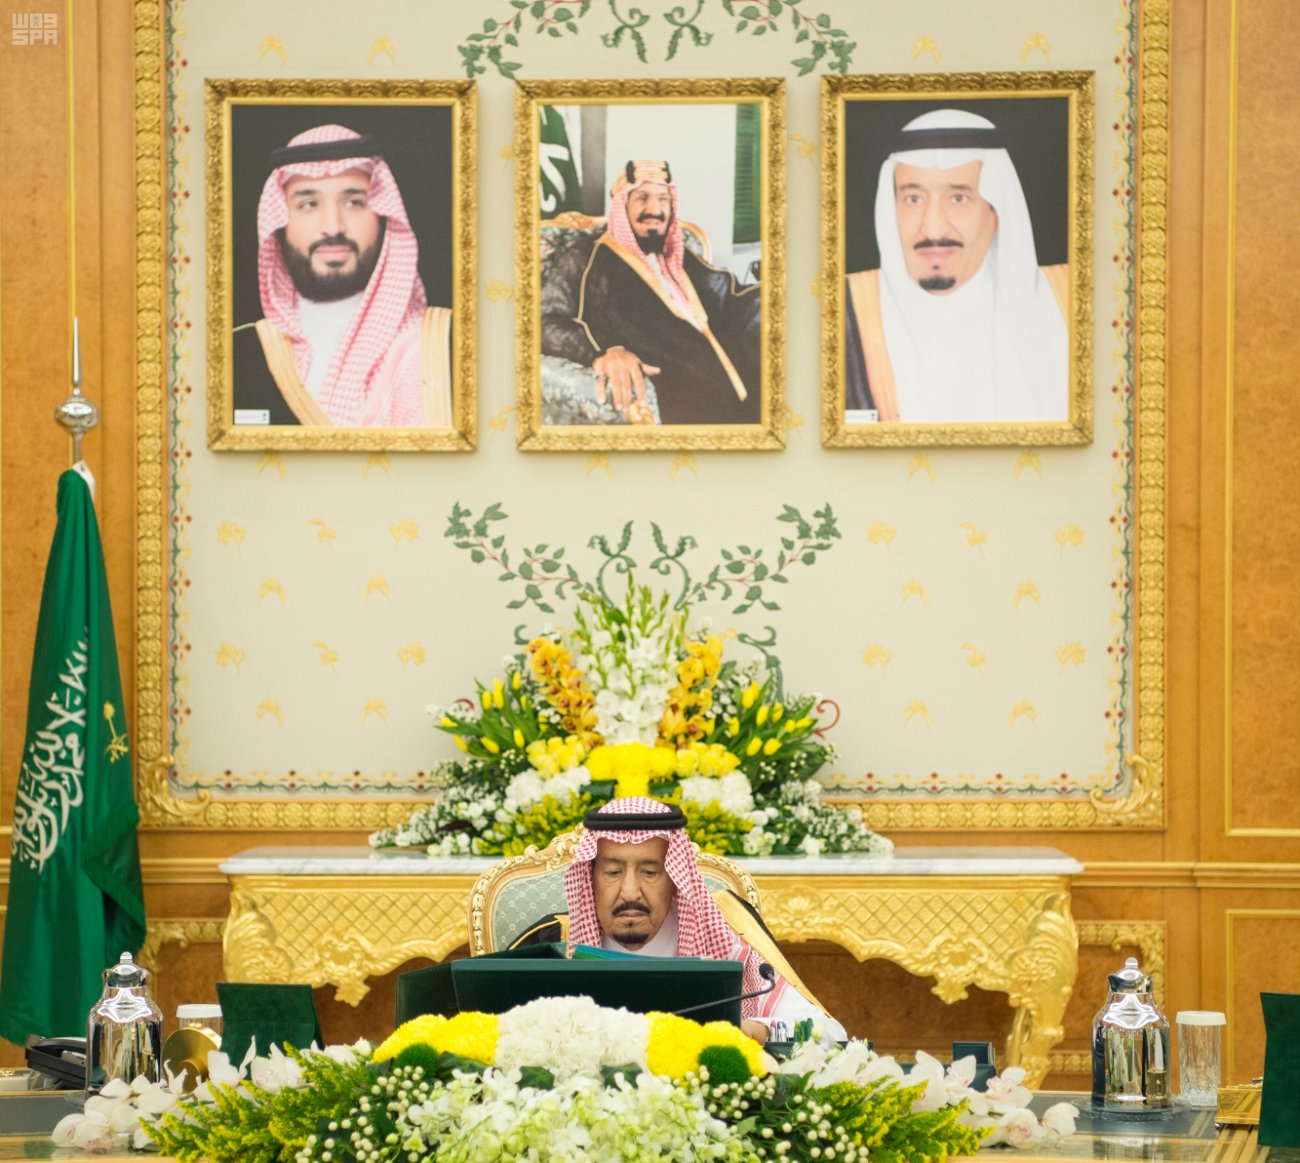  السعودية تجدد حرصها على تعزيز وحماية حقوق الإنسان وتحقيق التنمية المستدامة 